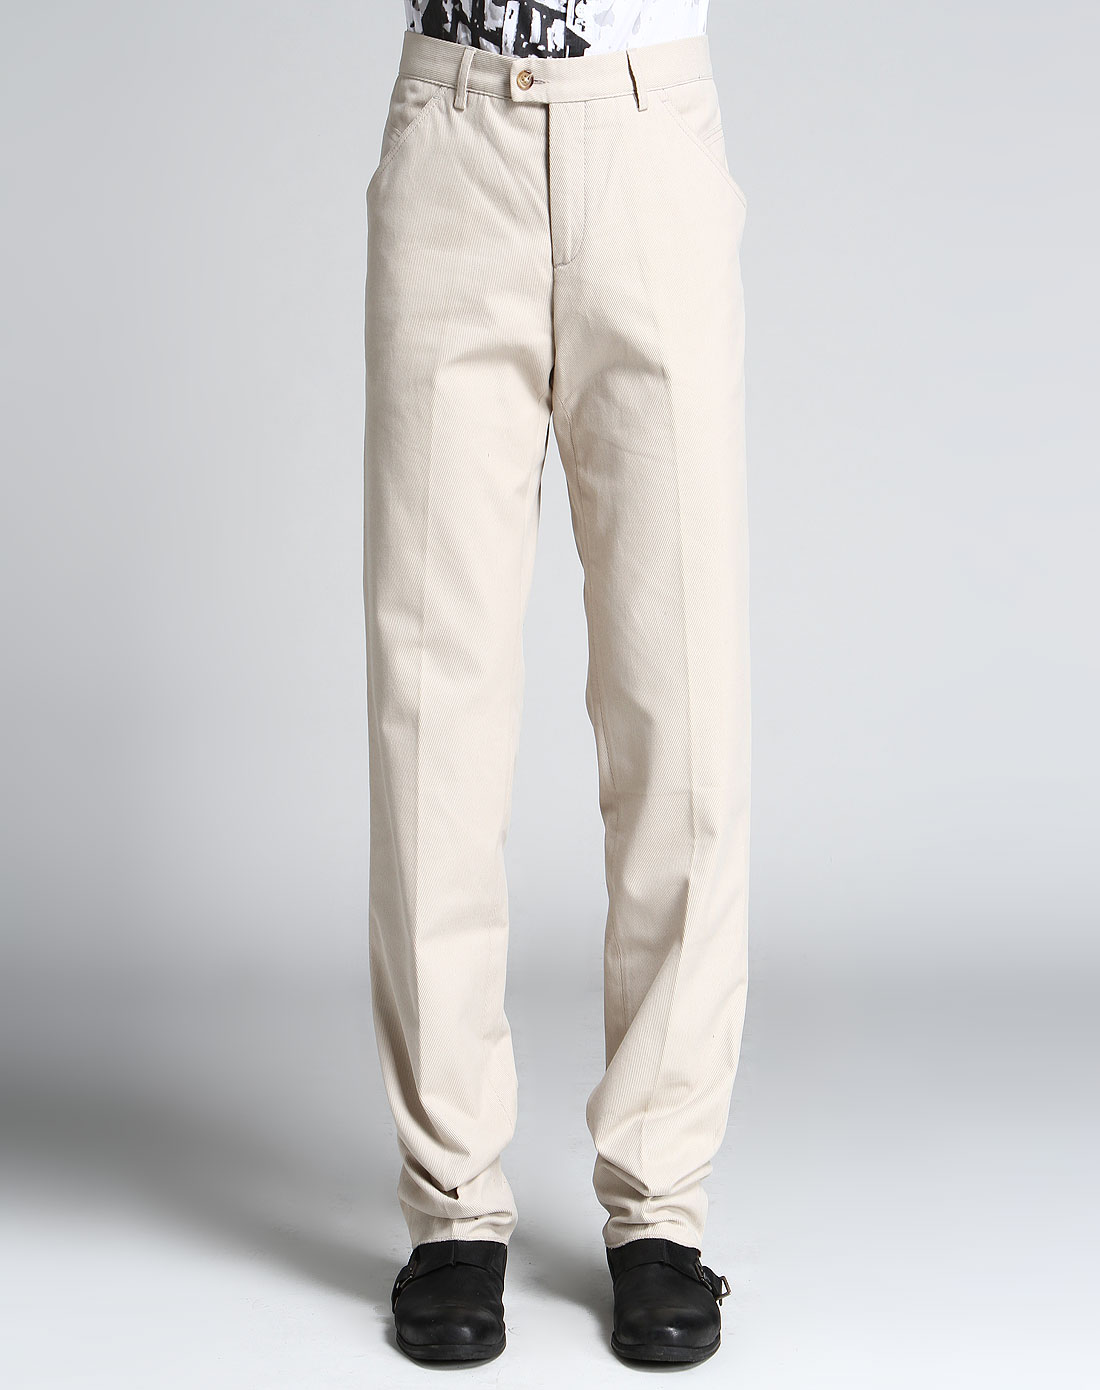 这才是教科书级别的“白裤子”搭配，清凉而且舒适，关键是不老气 -6parkbbs.com